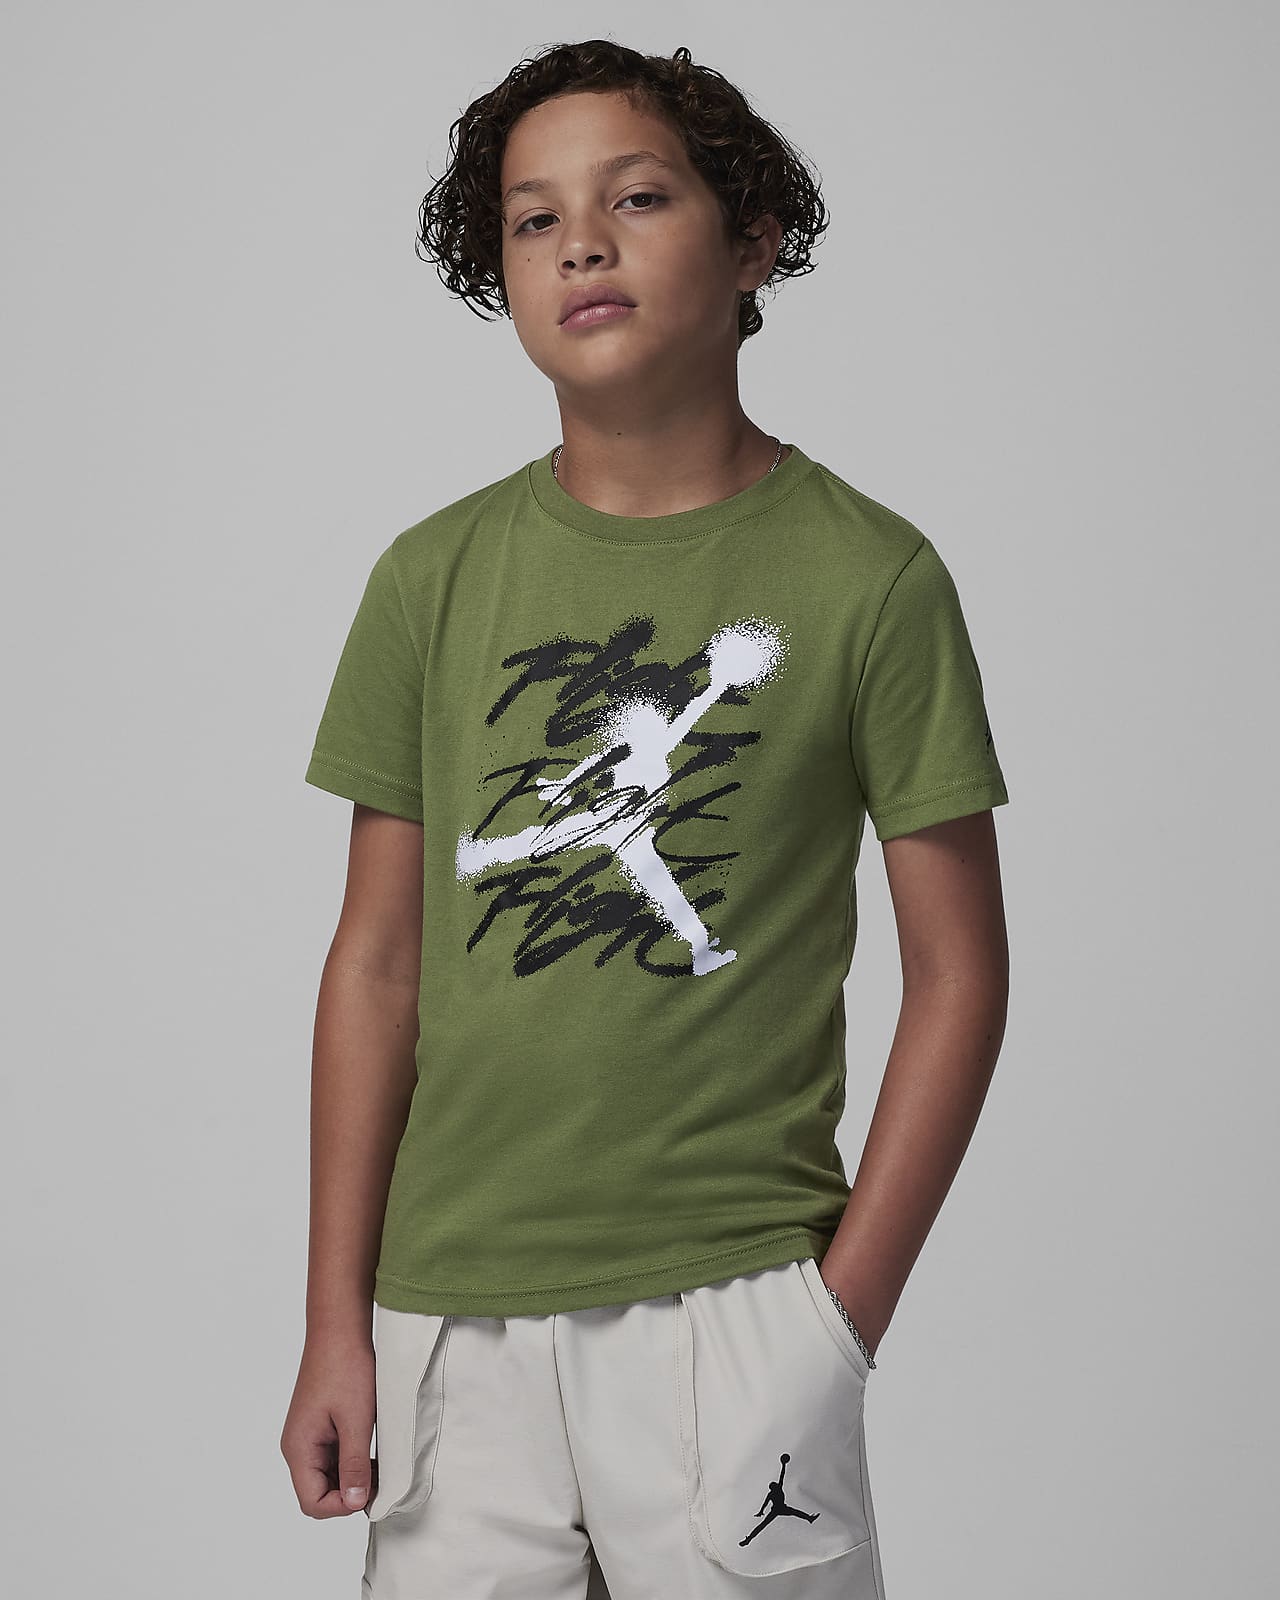 T-Shirt Jordan Jumpman Flight Sprayed Tee για μεγάλα παιδιά